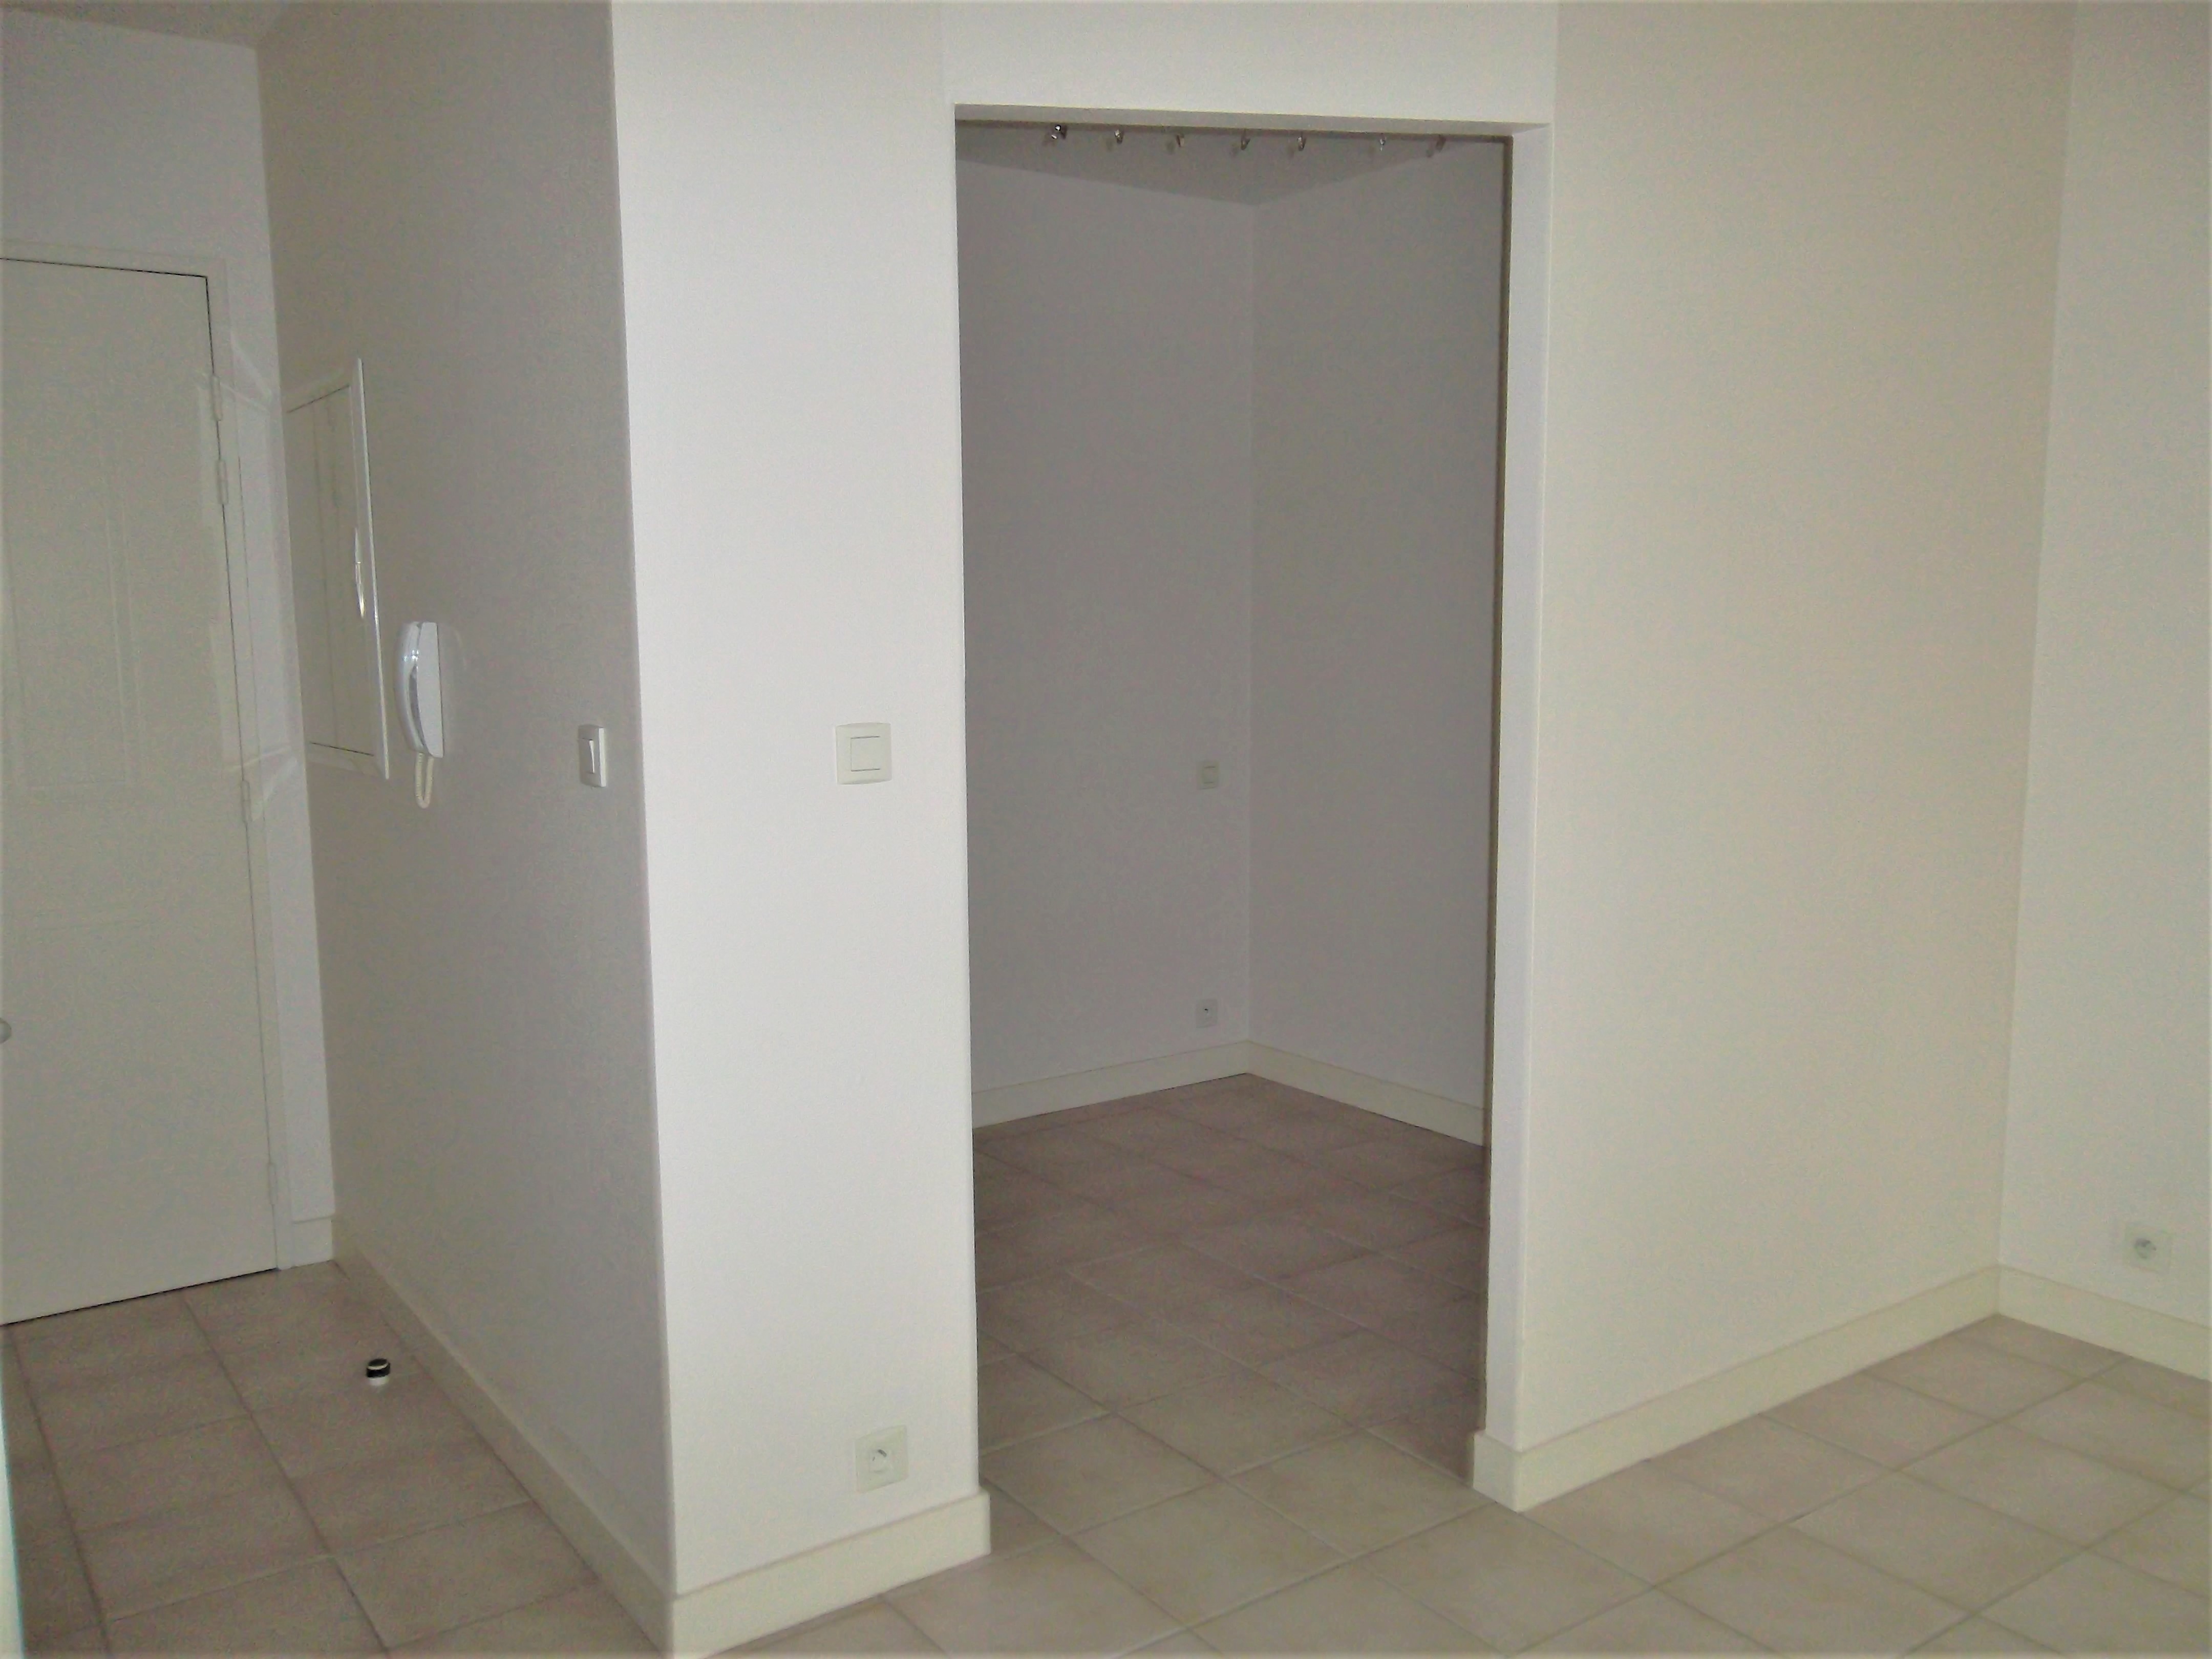 Qovop Immobilier | Achat Appartement 26 m² - 17440 Aytré